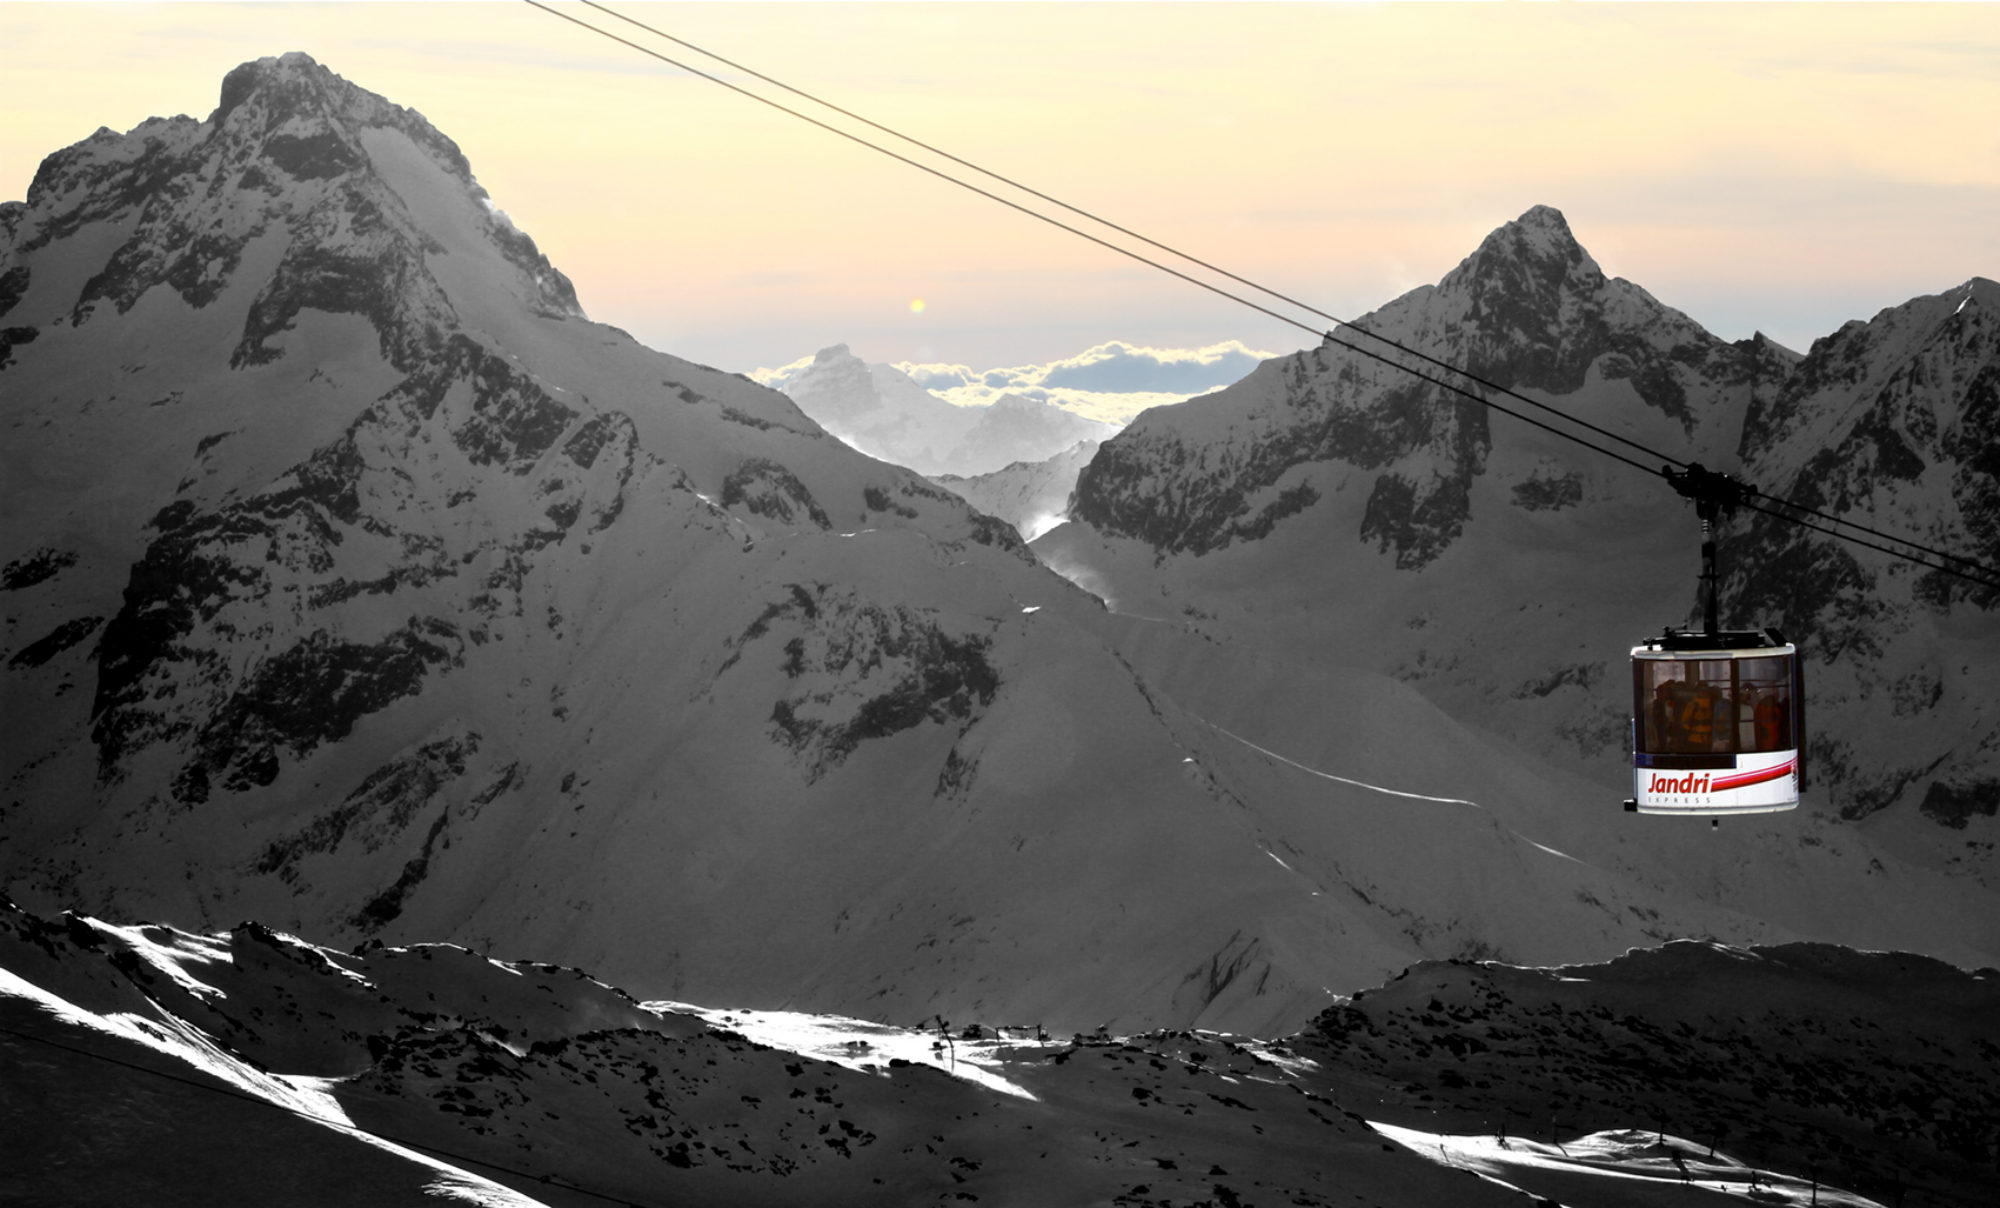 Vue sur la télécabine Jandri aux Deux Alpes, devant des sommets enneigés et un magnifique soleil couchant.